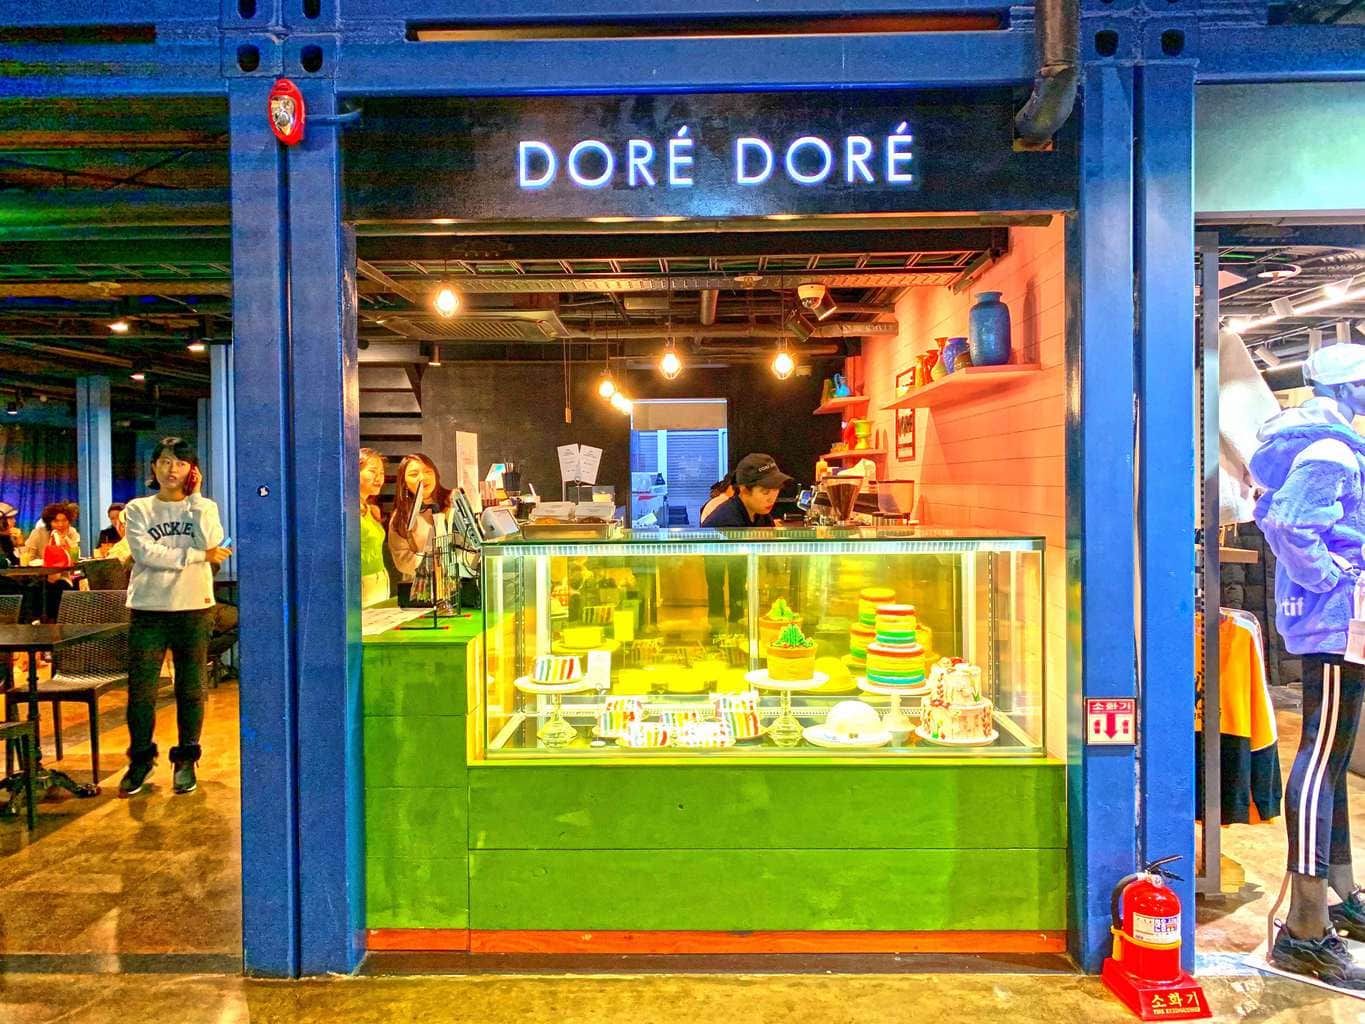 Dore Dore at Common Ground